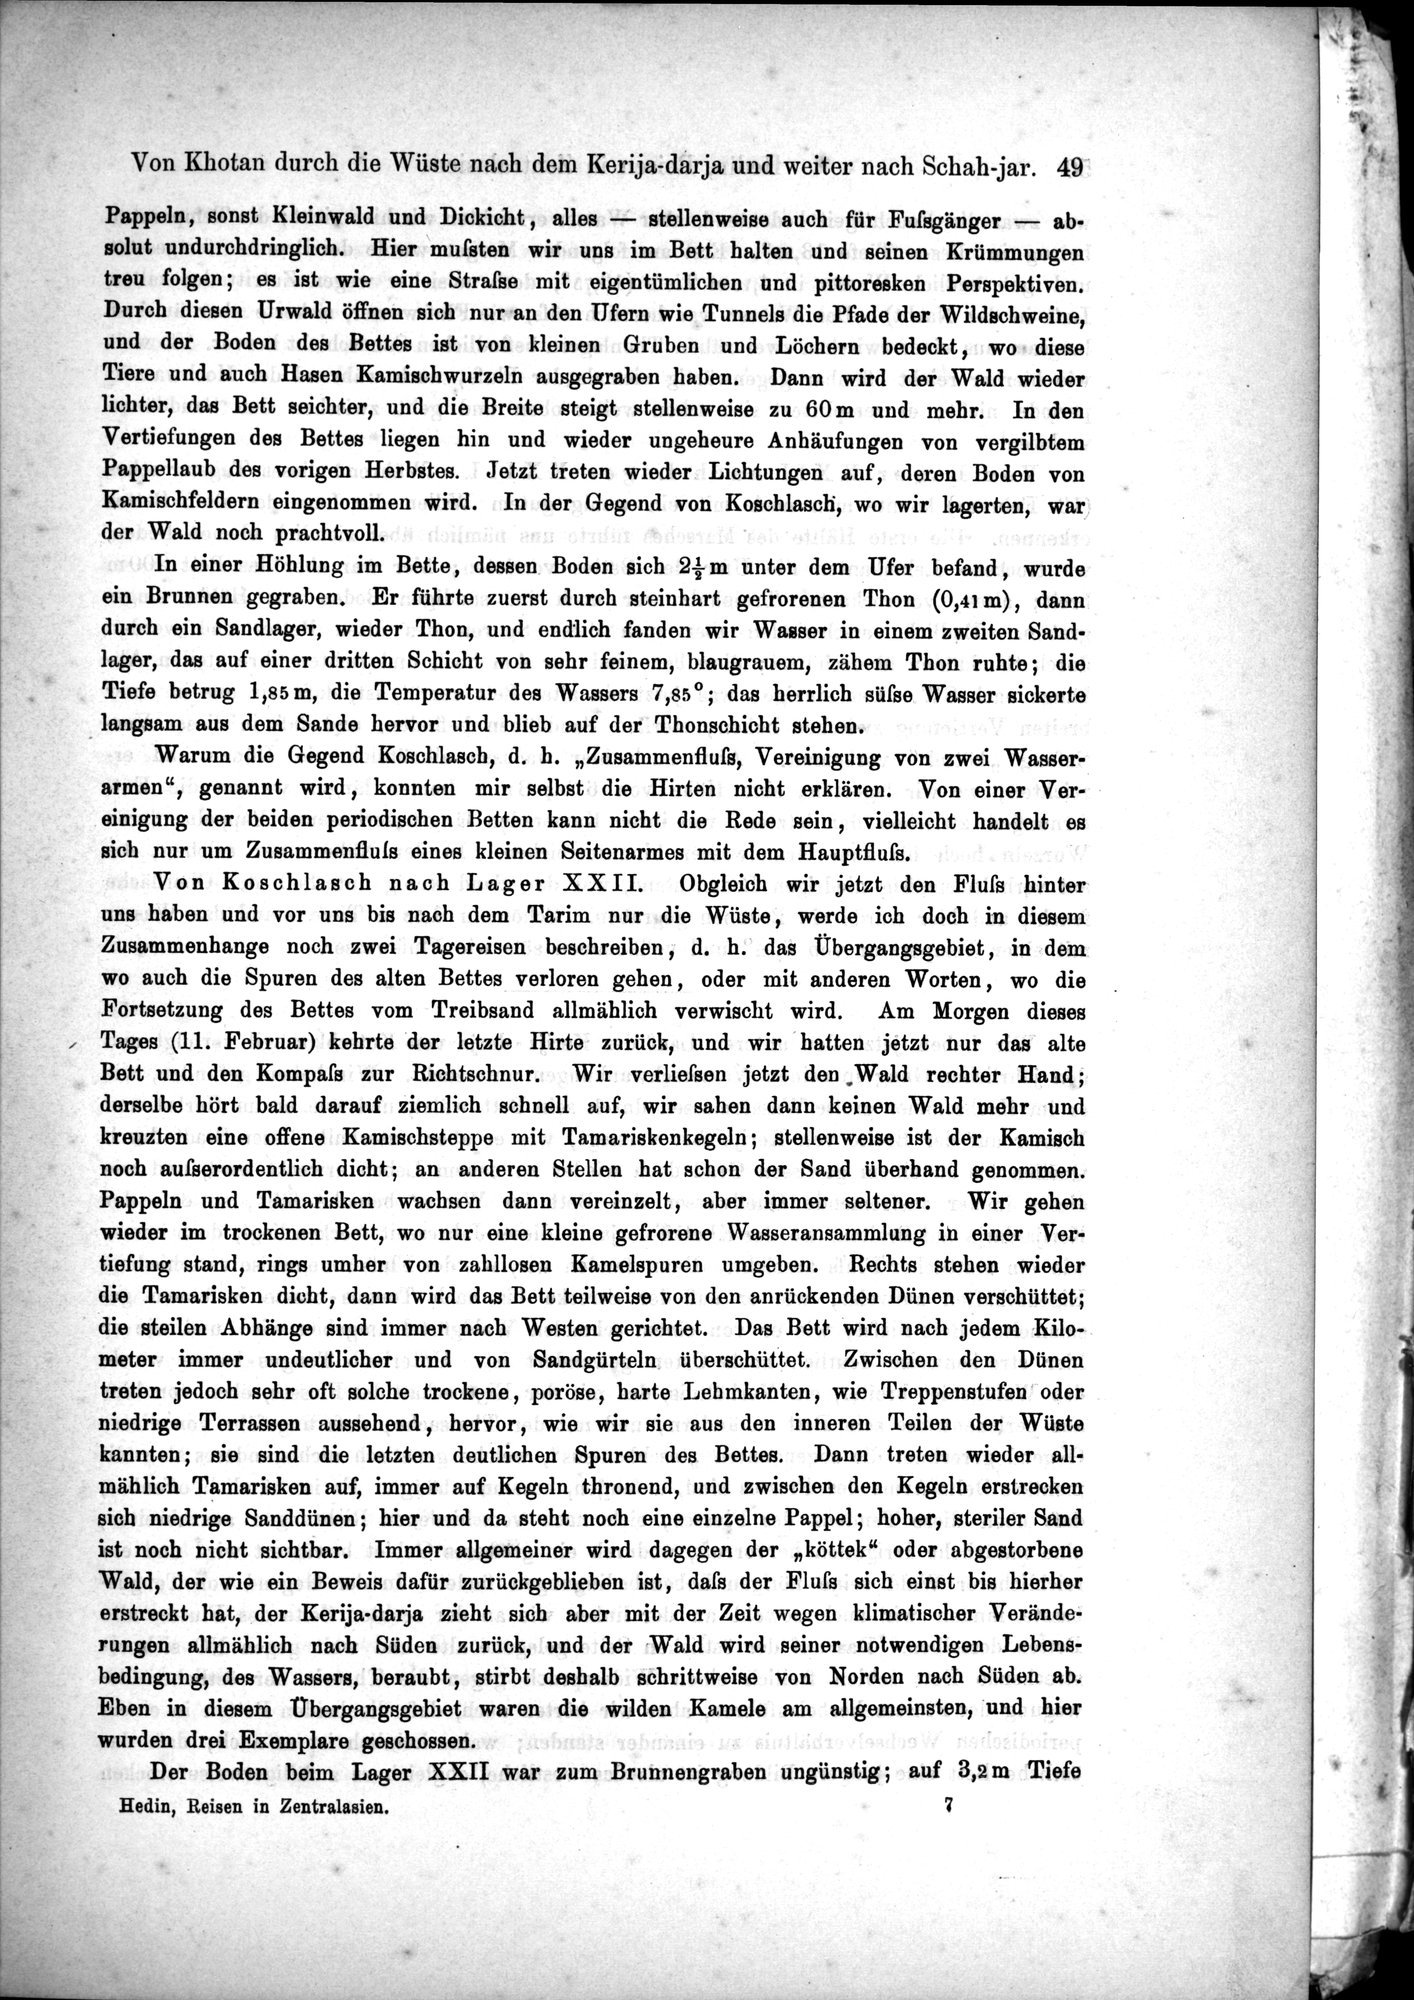 Die Geographische-Wissenschaftlichen Ergebnisse meiner Reisen in Zentralasien, 1894-1897 : vol.1 / Page 61 (Grayscale High Resolution Image)